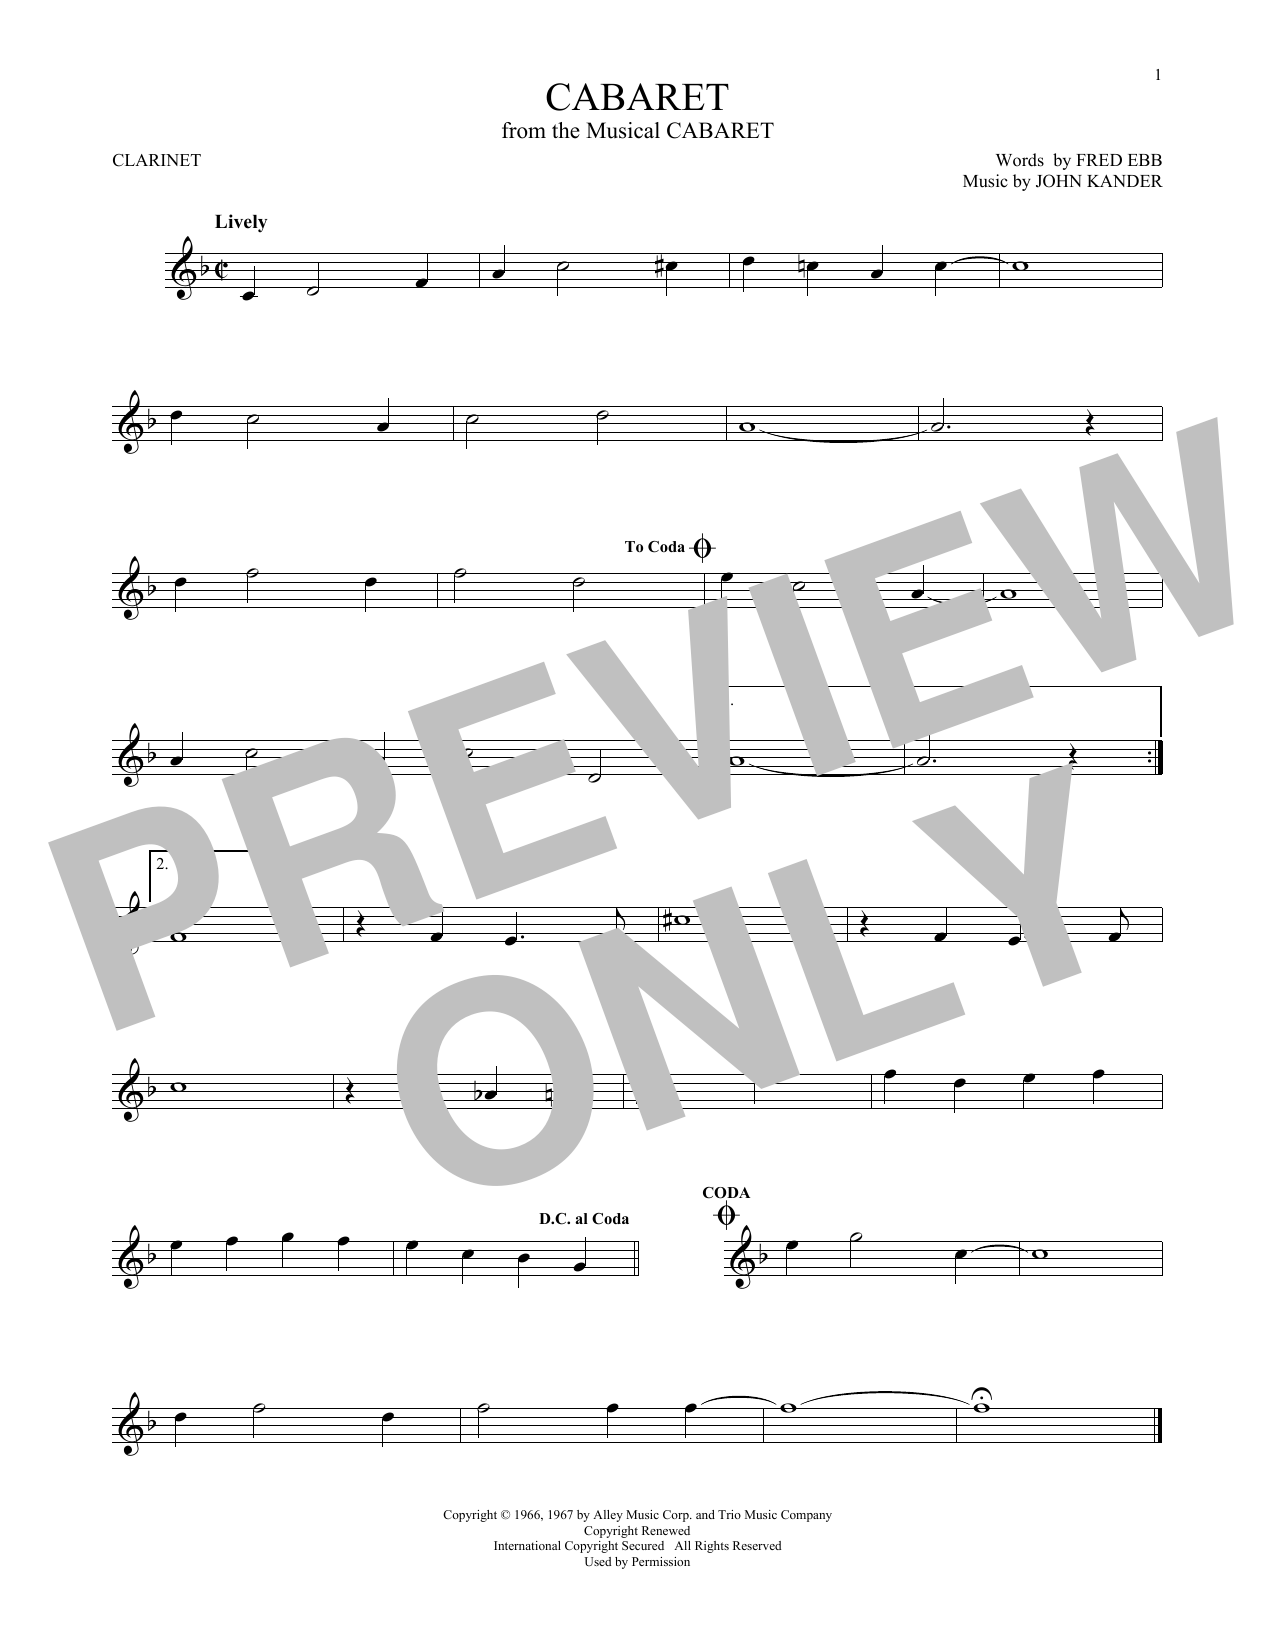 John Kander & Fred Ebb Cabaret Sheet Music Notes & Chords for Violin - Download or Print PDF